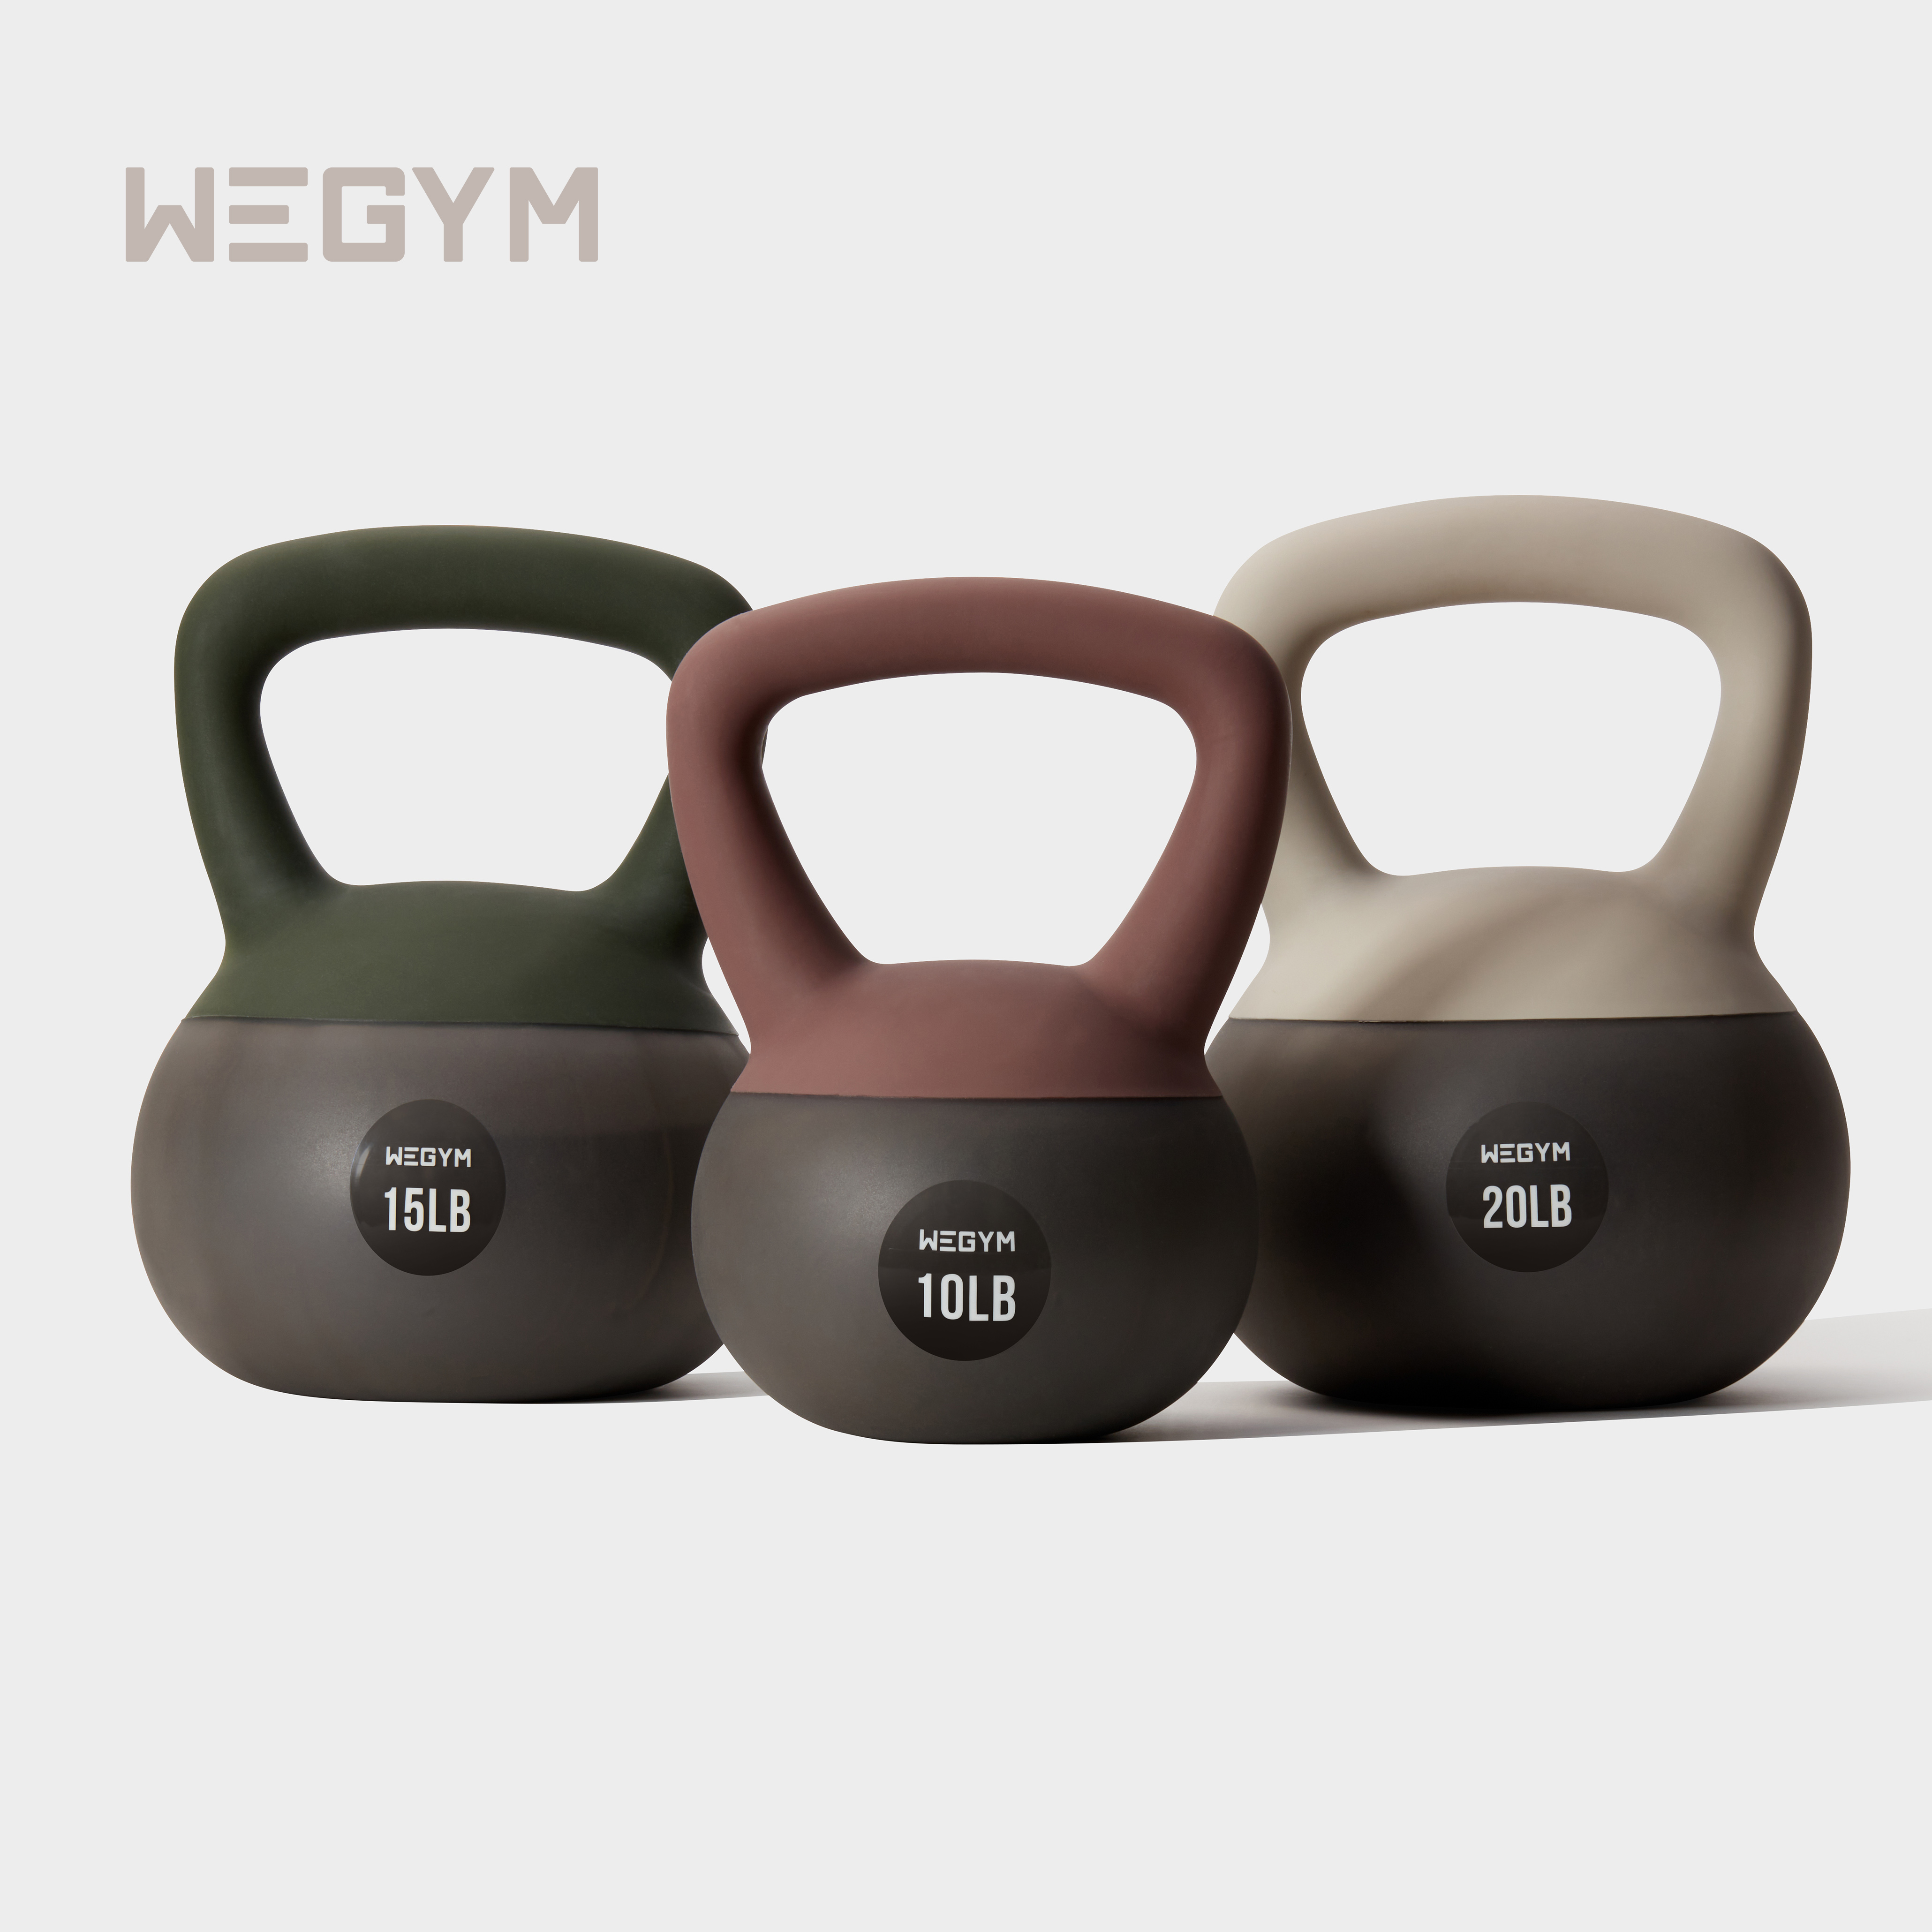 WeGym软壶铃专业健身家用女士翘臀减肥燃脂塑形男士力量增肌训练